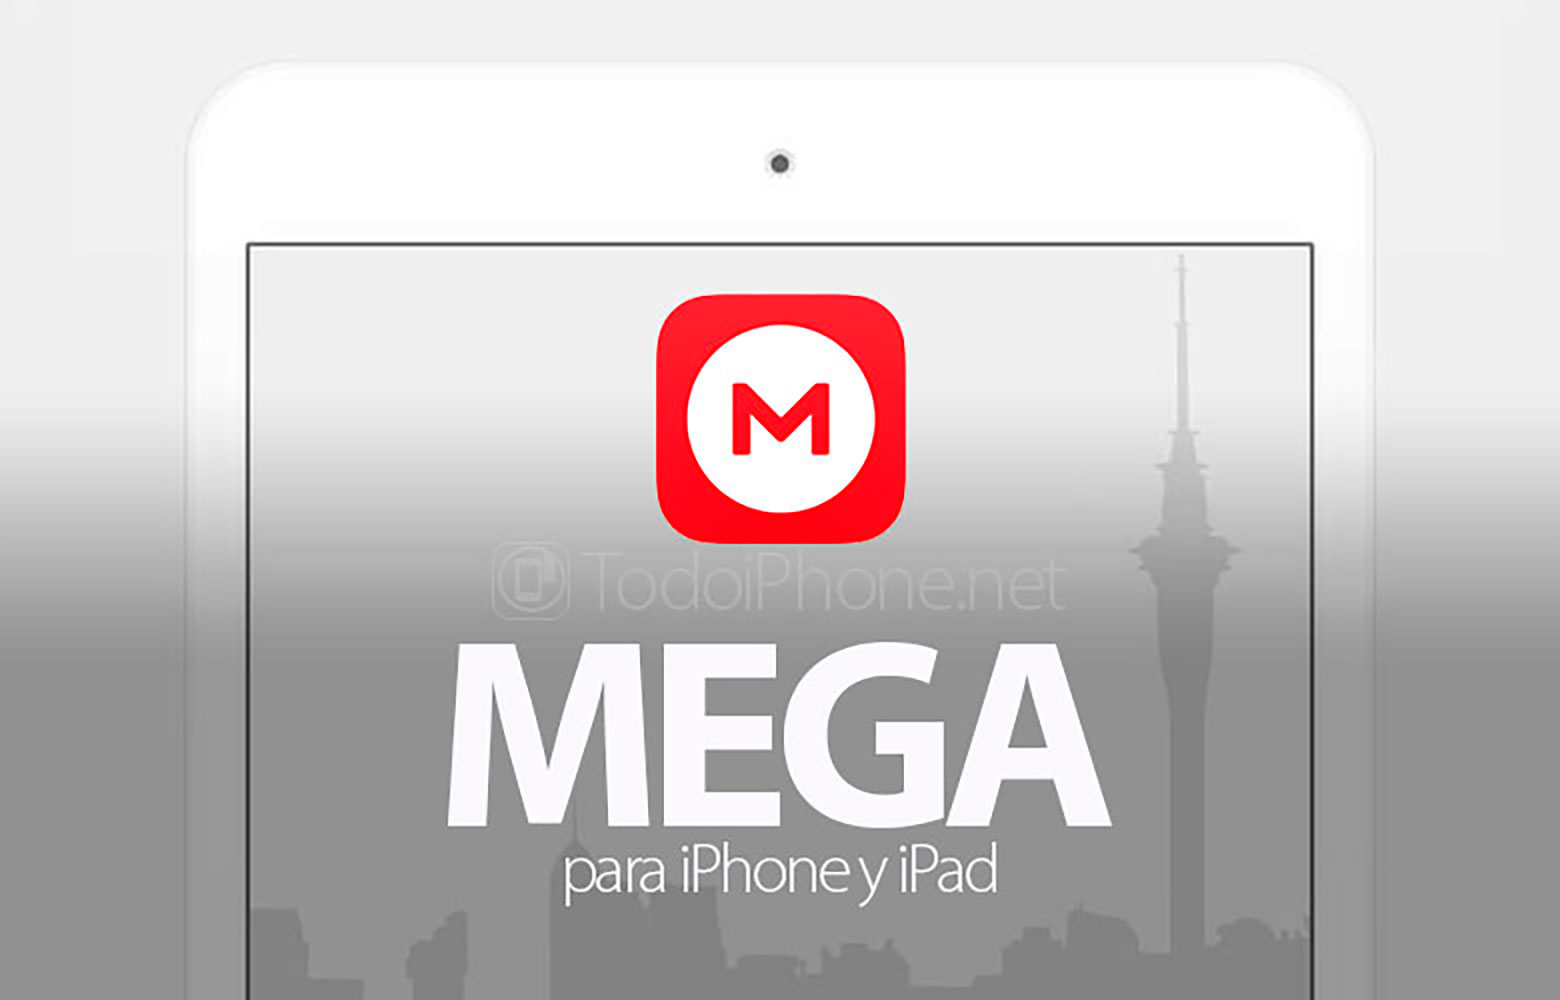 MEGA đi kèm với các tính năng mới cho iPhone và iPad 2